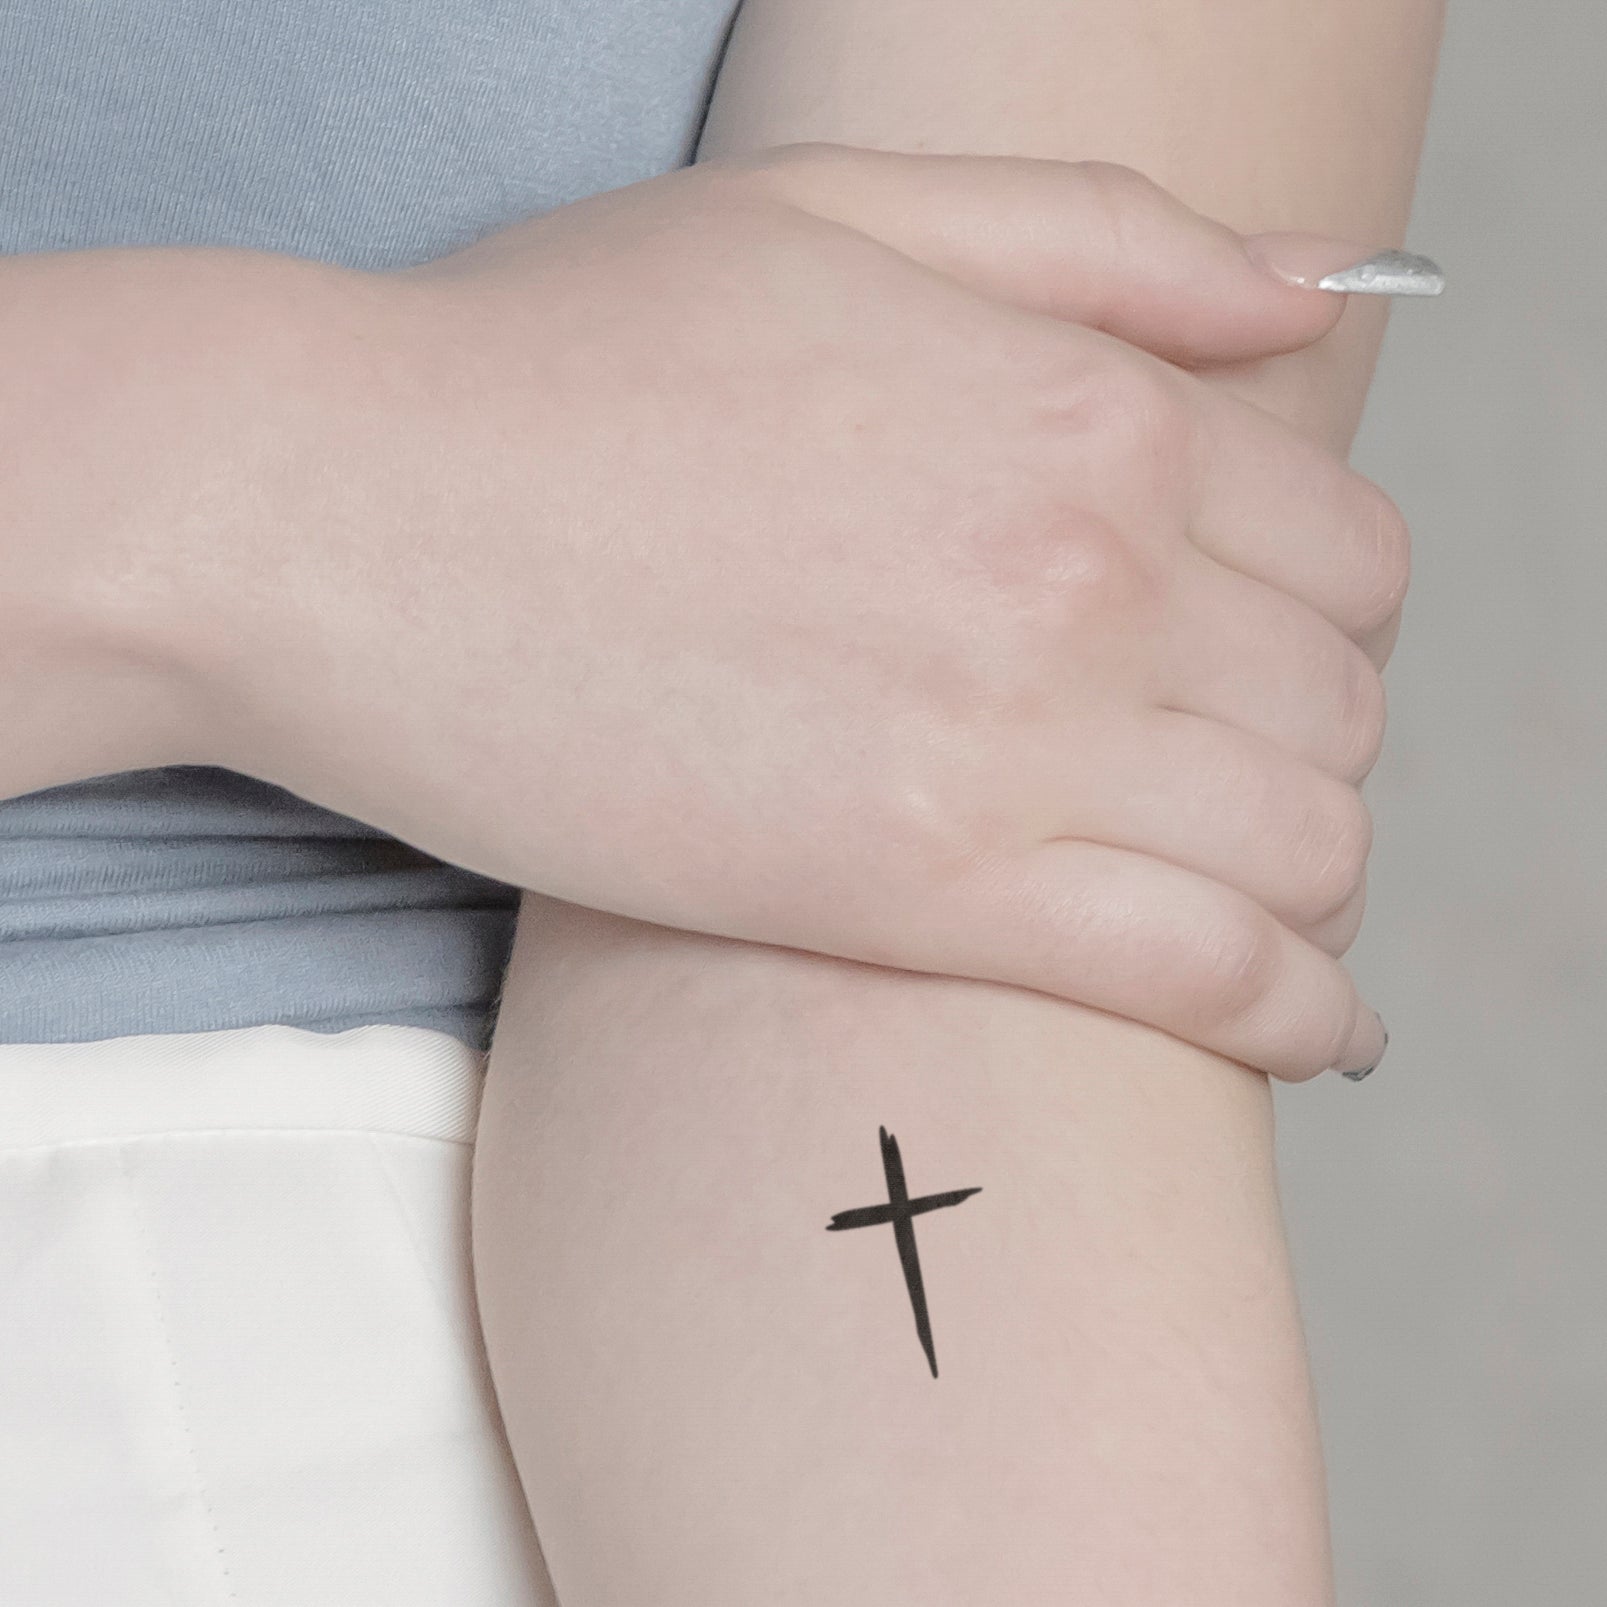 Kreuz ausgefüllt Tattoo von minink, der Marke für temporäre Tattoos.